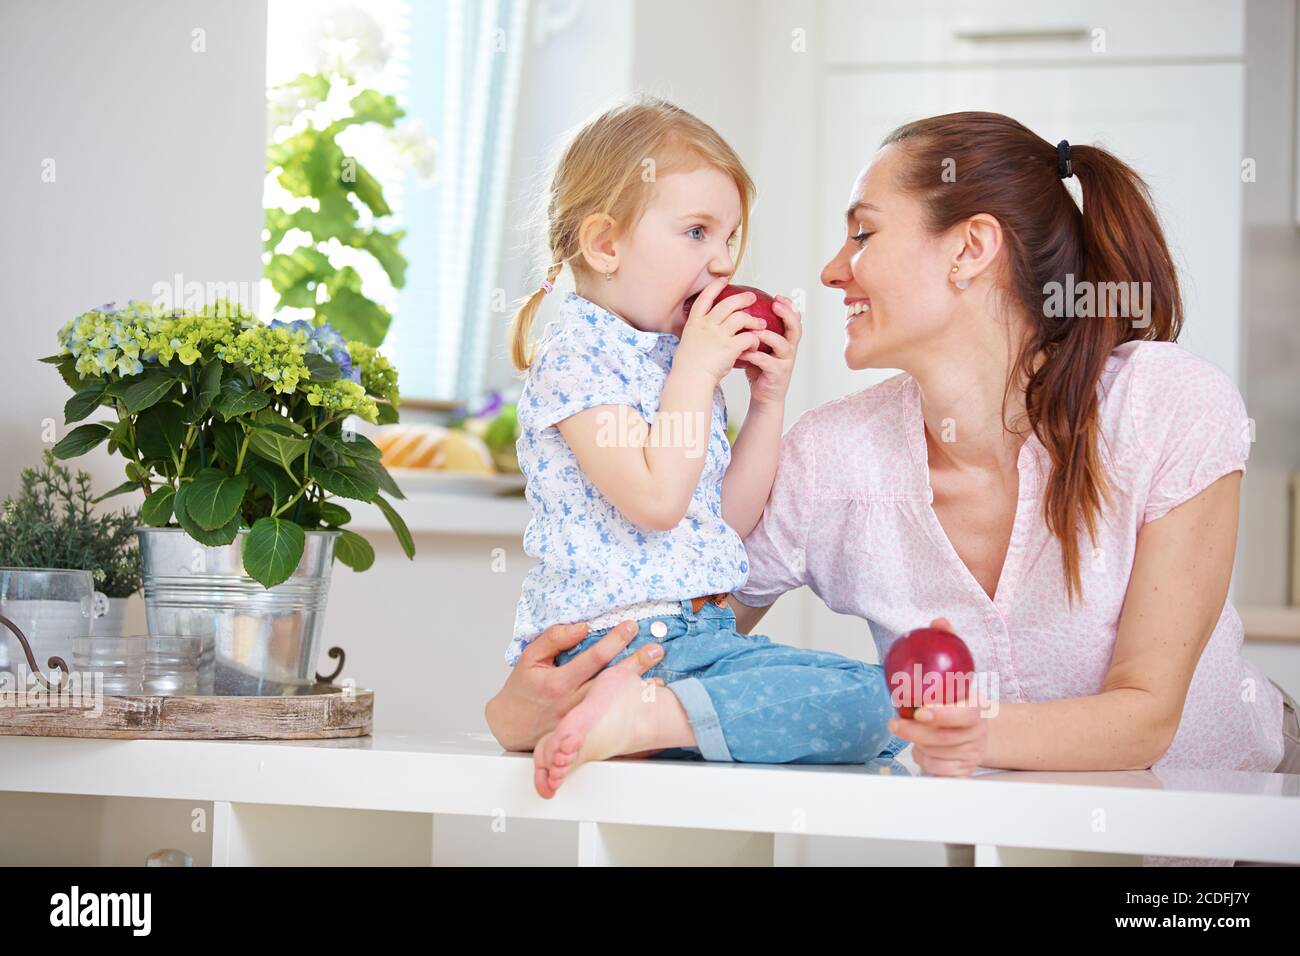 La mère et la fille mangent chacune une pomme dans la cuisine Banque D'Images